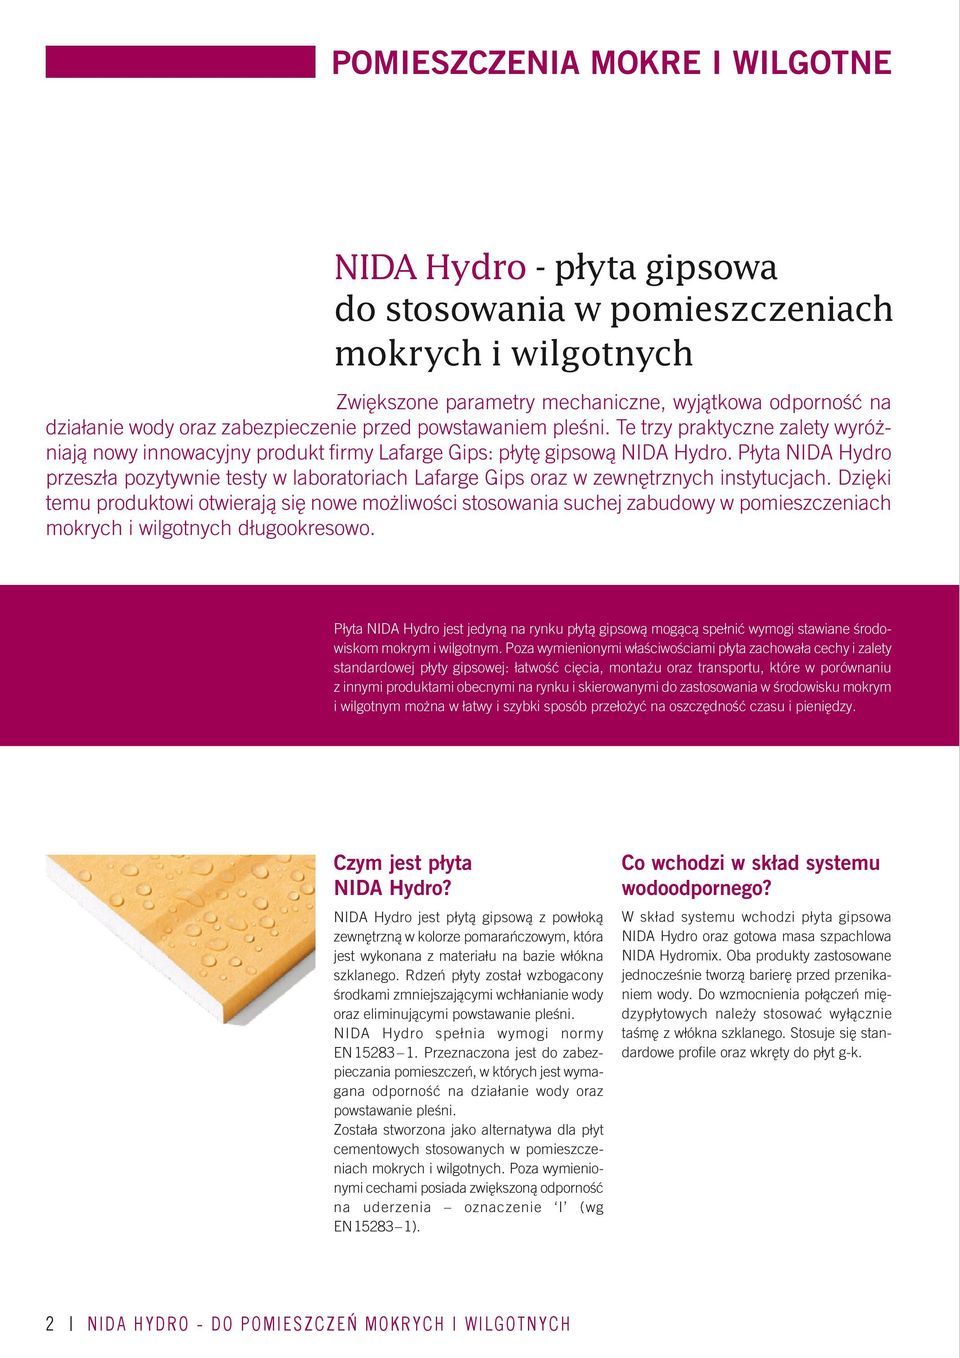 Płyta NIDA Hydro przeszła pozytywnie testy w laboratoriach Lafarge Gips oraz w zewnętrznych instytucjach.